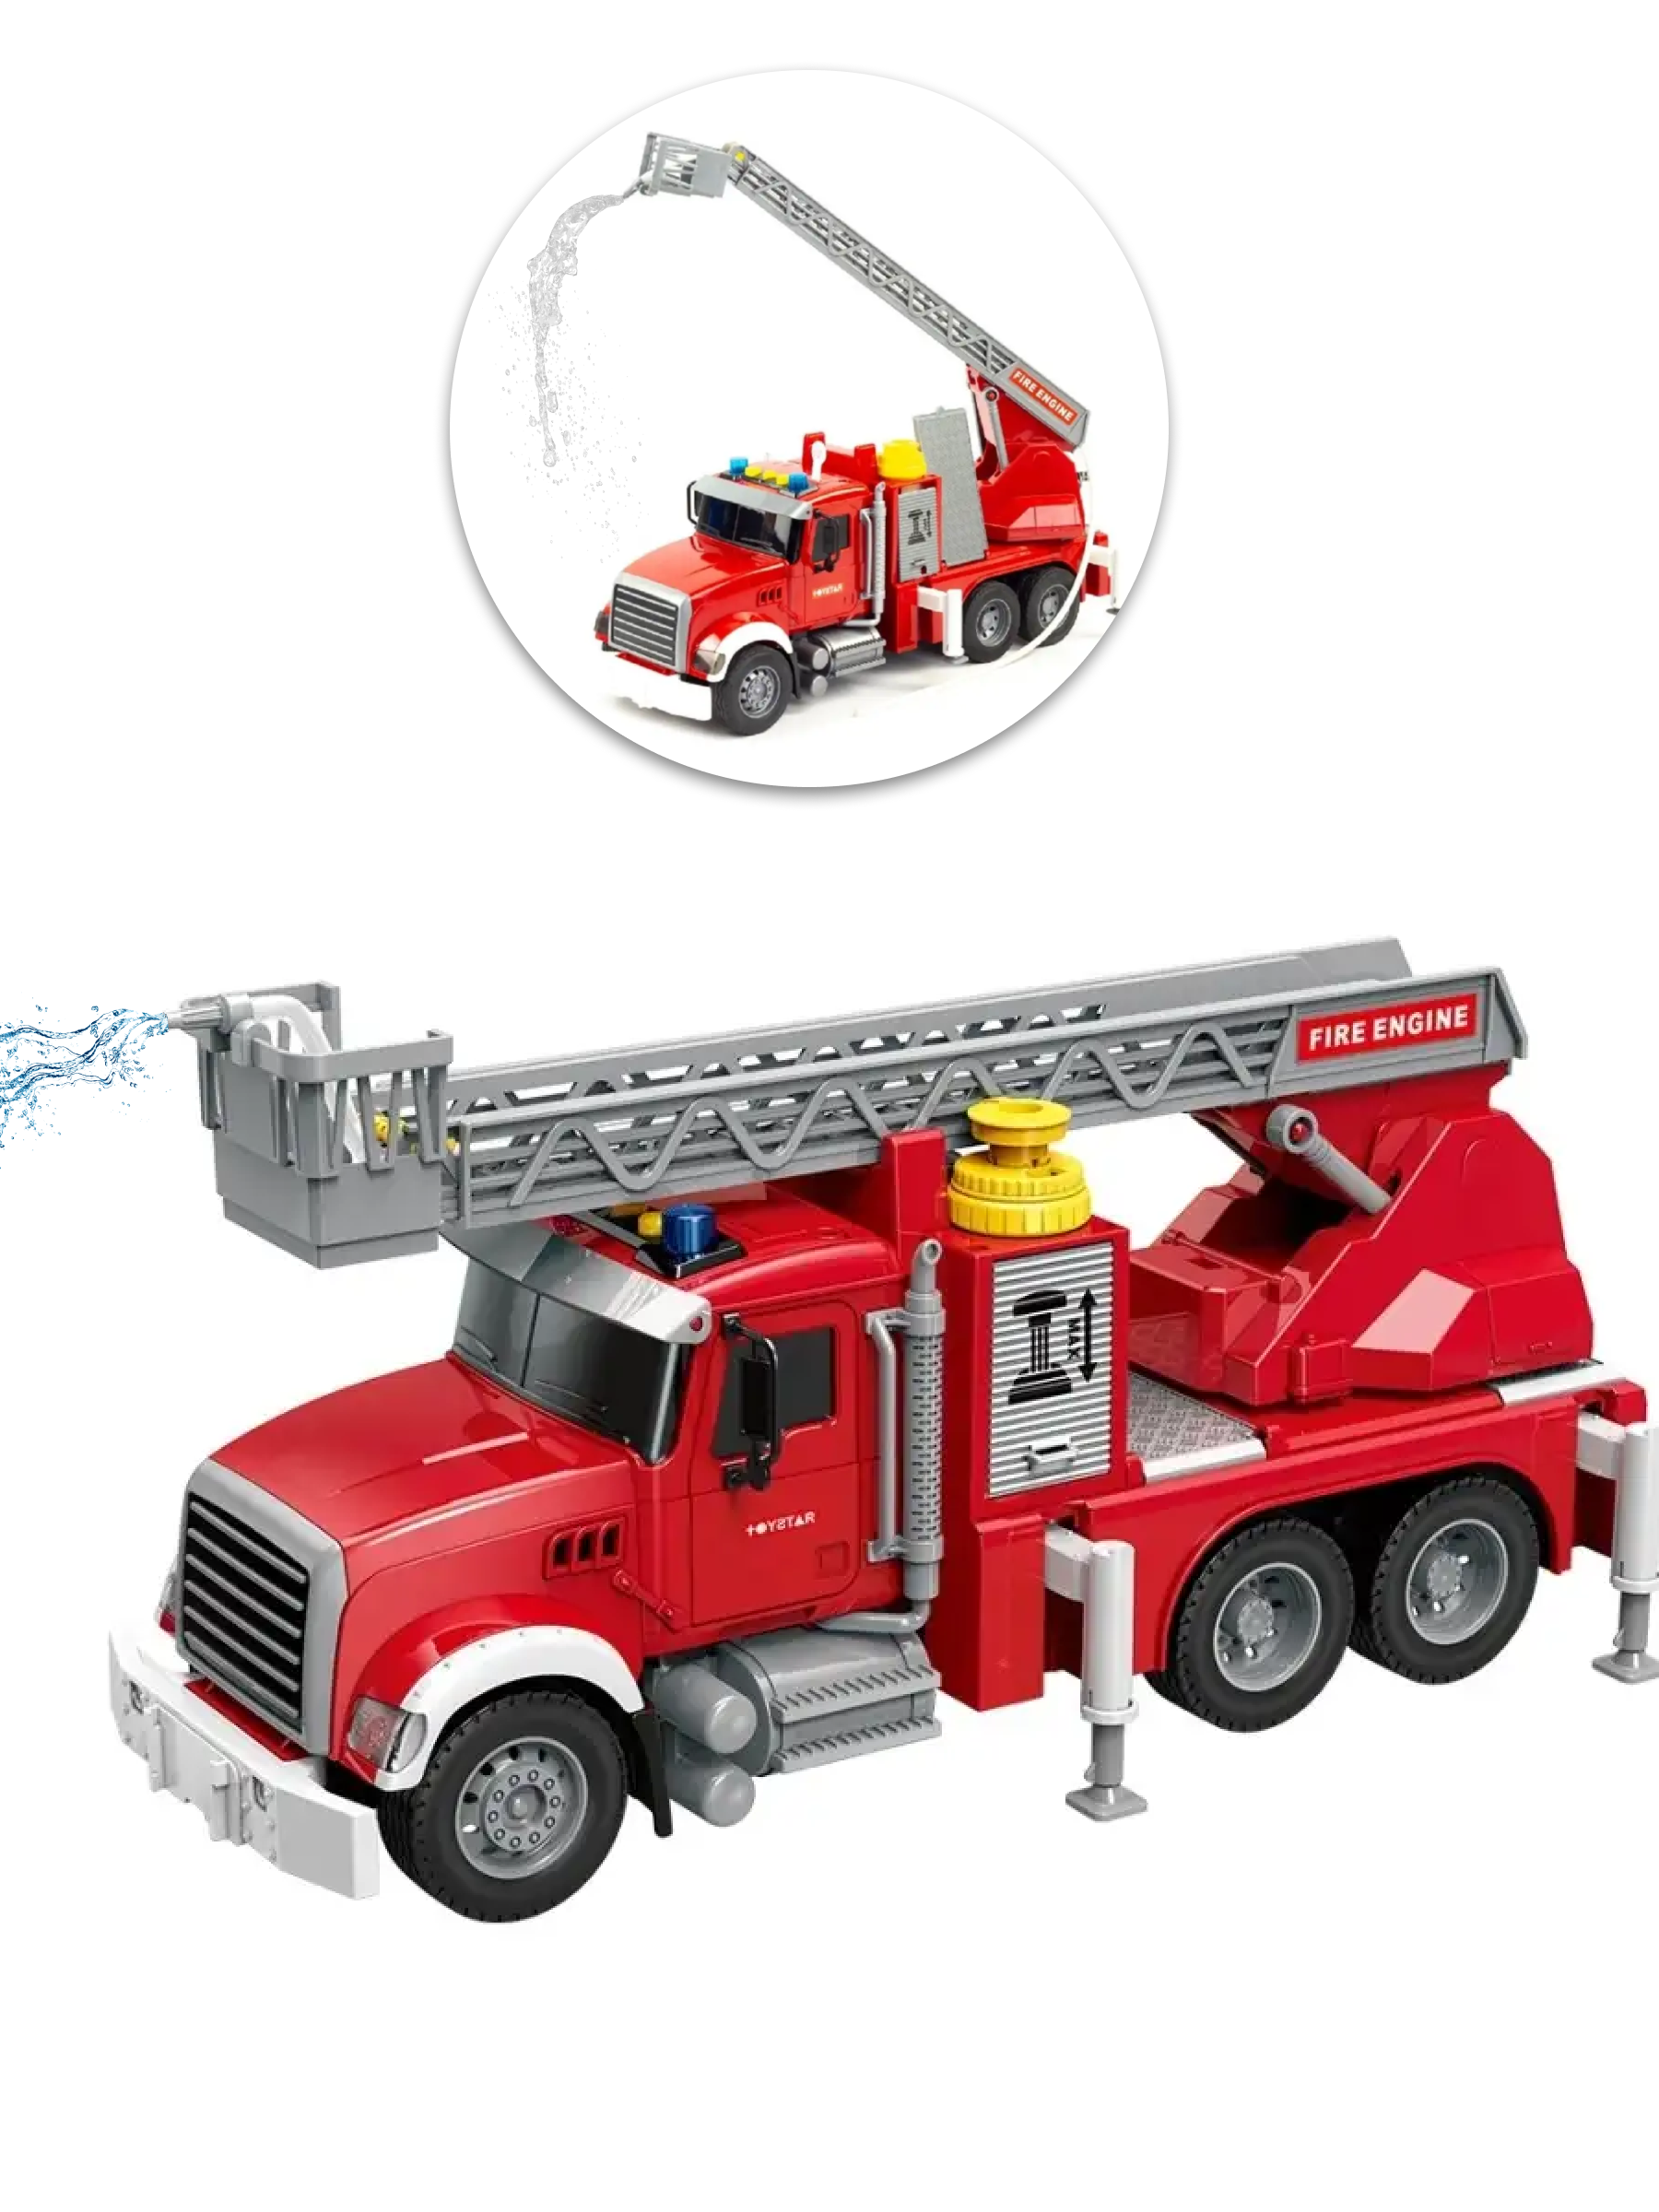 Инерционная игрушка пожарная машина 34,5 см, масштаб 1:14, брызгает водой, помповая подкачка воды, раздвижная лестница, звук и свет, на батарейках, 666-58Р